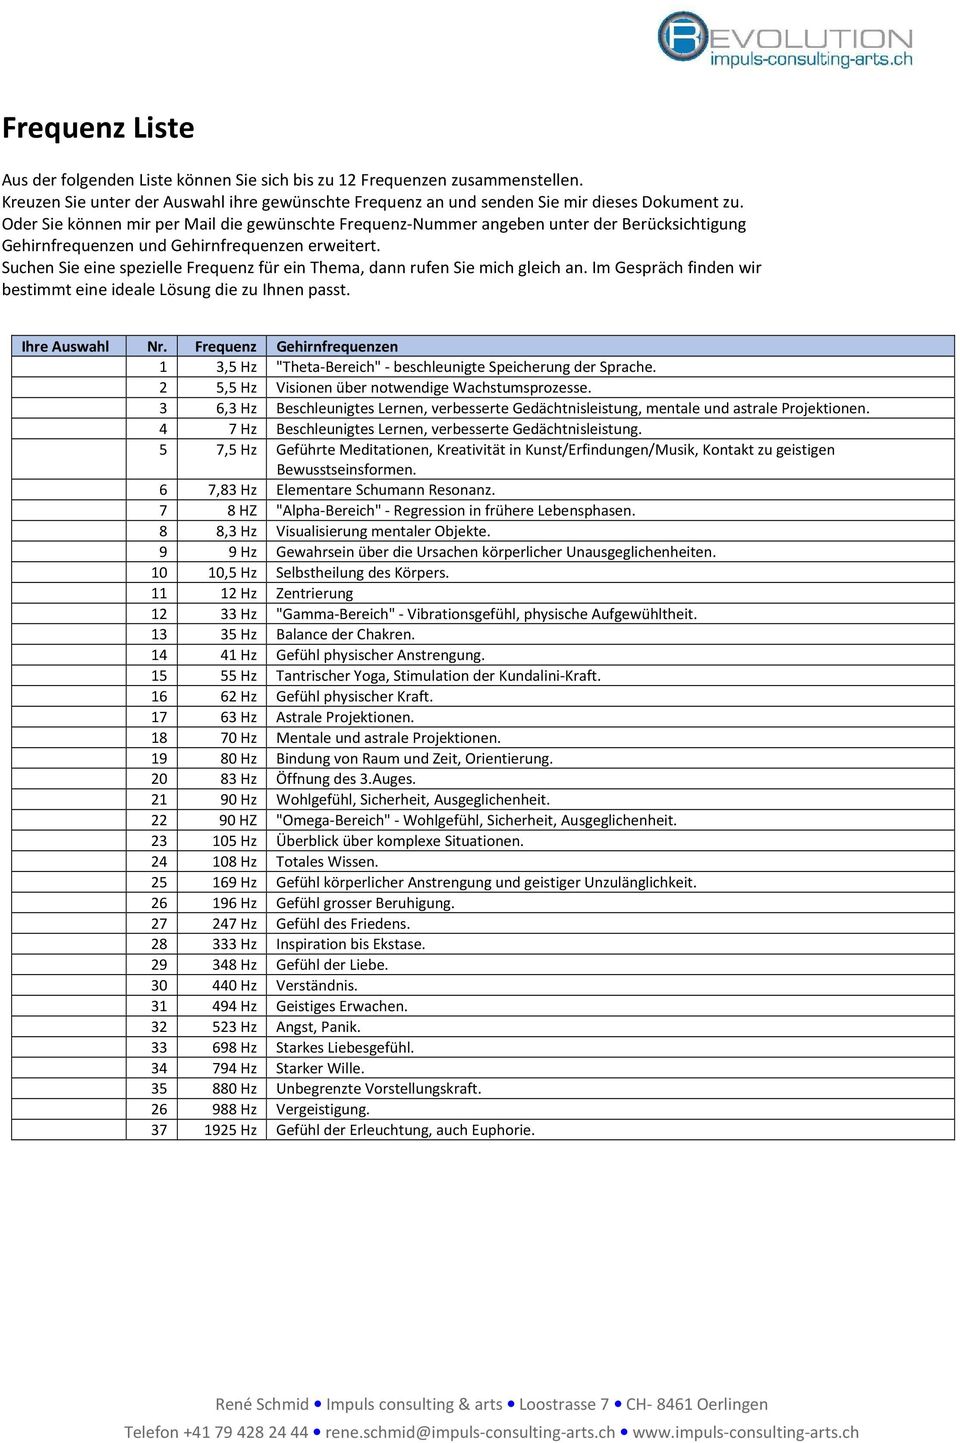 Frequenzen pdf heilende liste Bundesnetzagentur